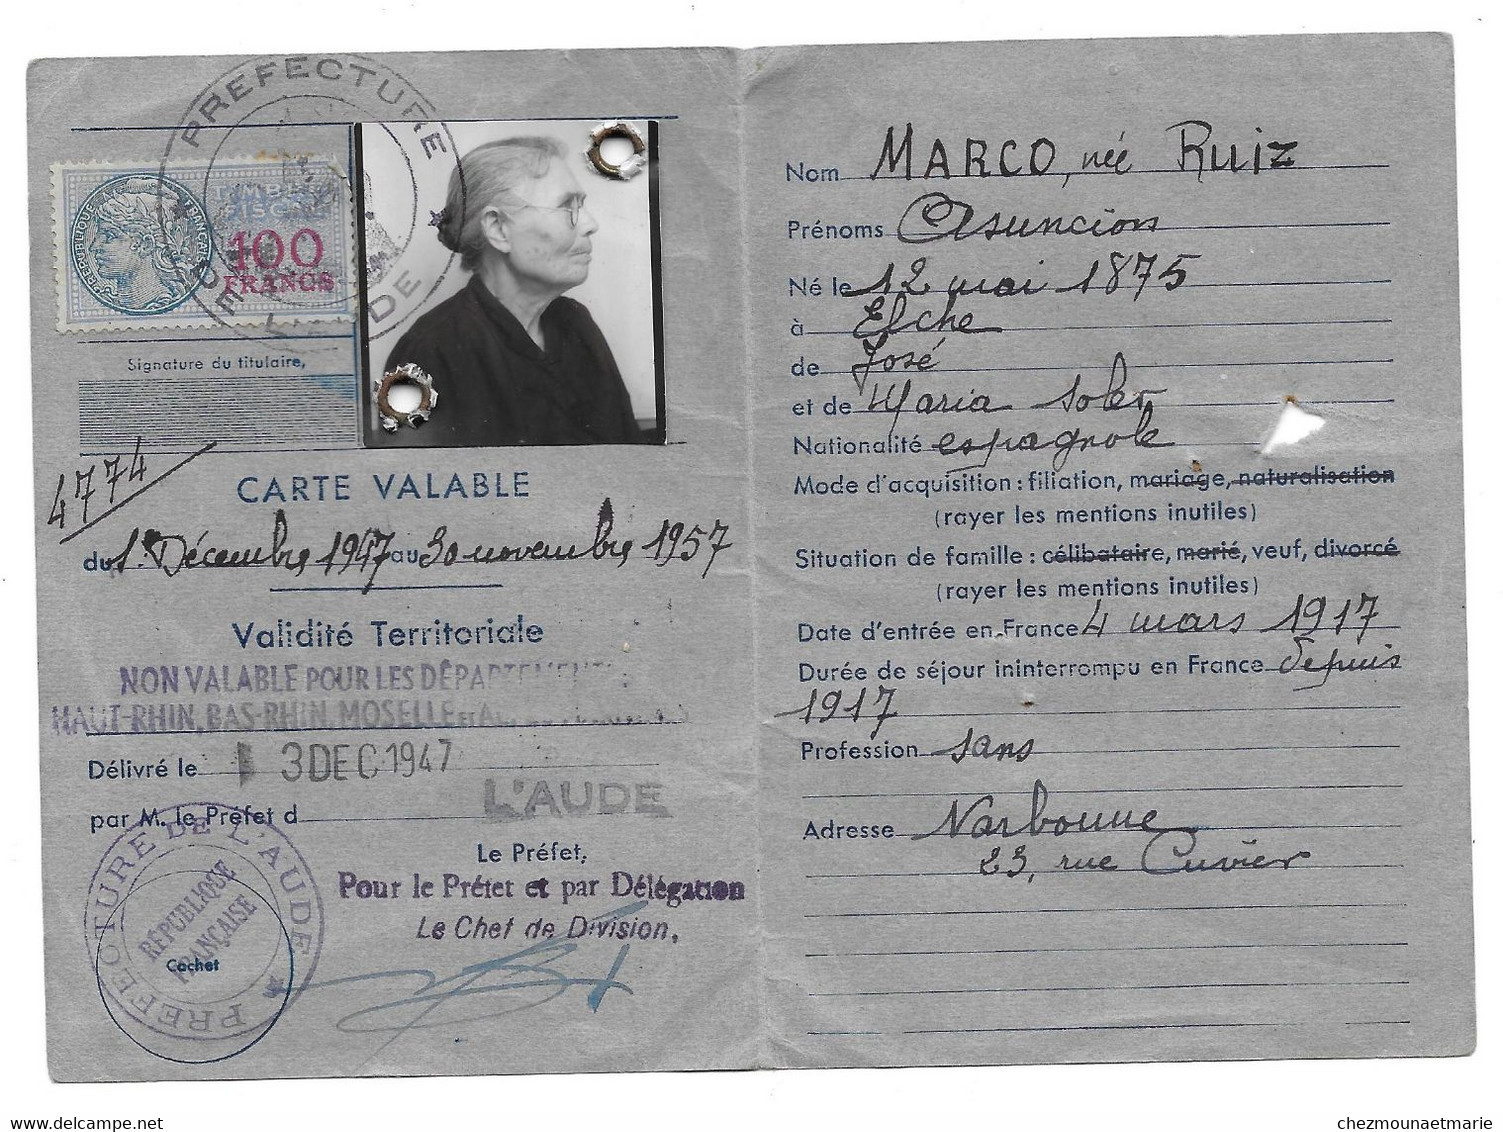 1947 AUDE - RUIZ ASUNCION VVE MARCO HABITANT NARBONNE RUE CUVIER NEE EN 1875 A ELCHE (ESPAGNE) - CARTE DE SEJOUR - Documents Historiques